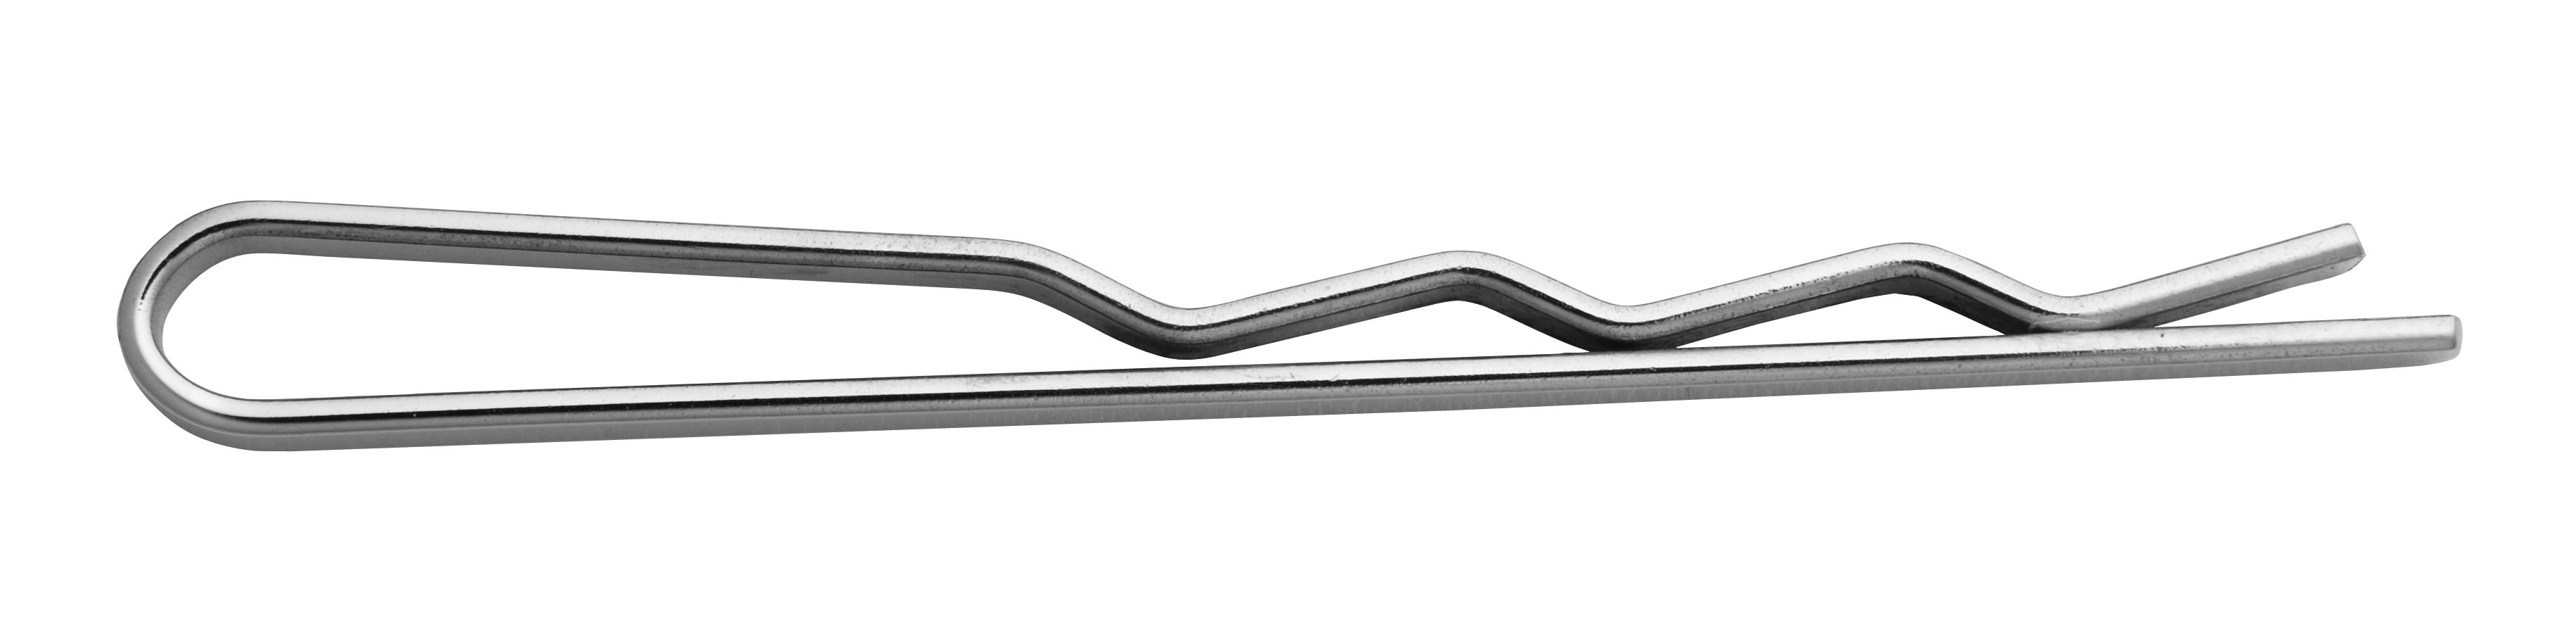 Krawattenschieber Silber 925/-, L 48,00 x B 2,80mm